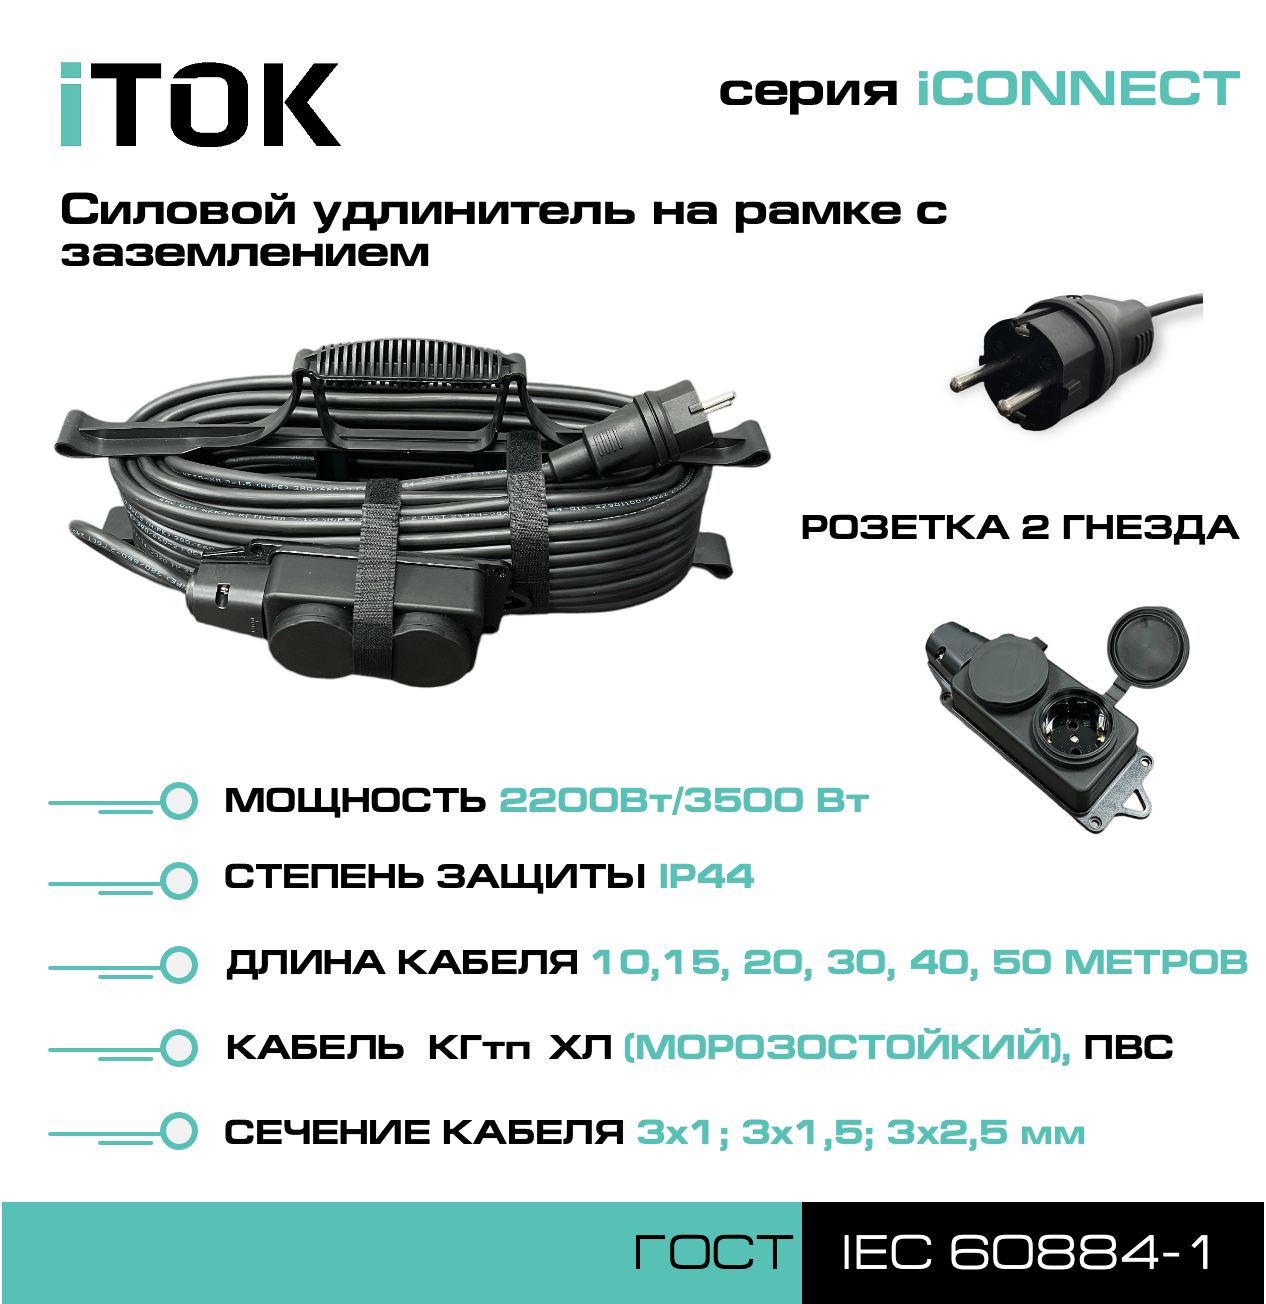 Удлинитель на рамке с заземлением серии iTOK iCONNECT ПВС 3х1,5 мм 2 гнезда IP44 15 м фигурный пазл в рамке